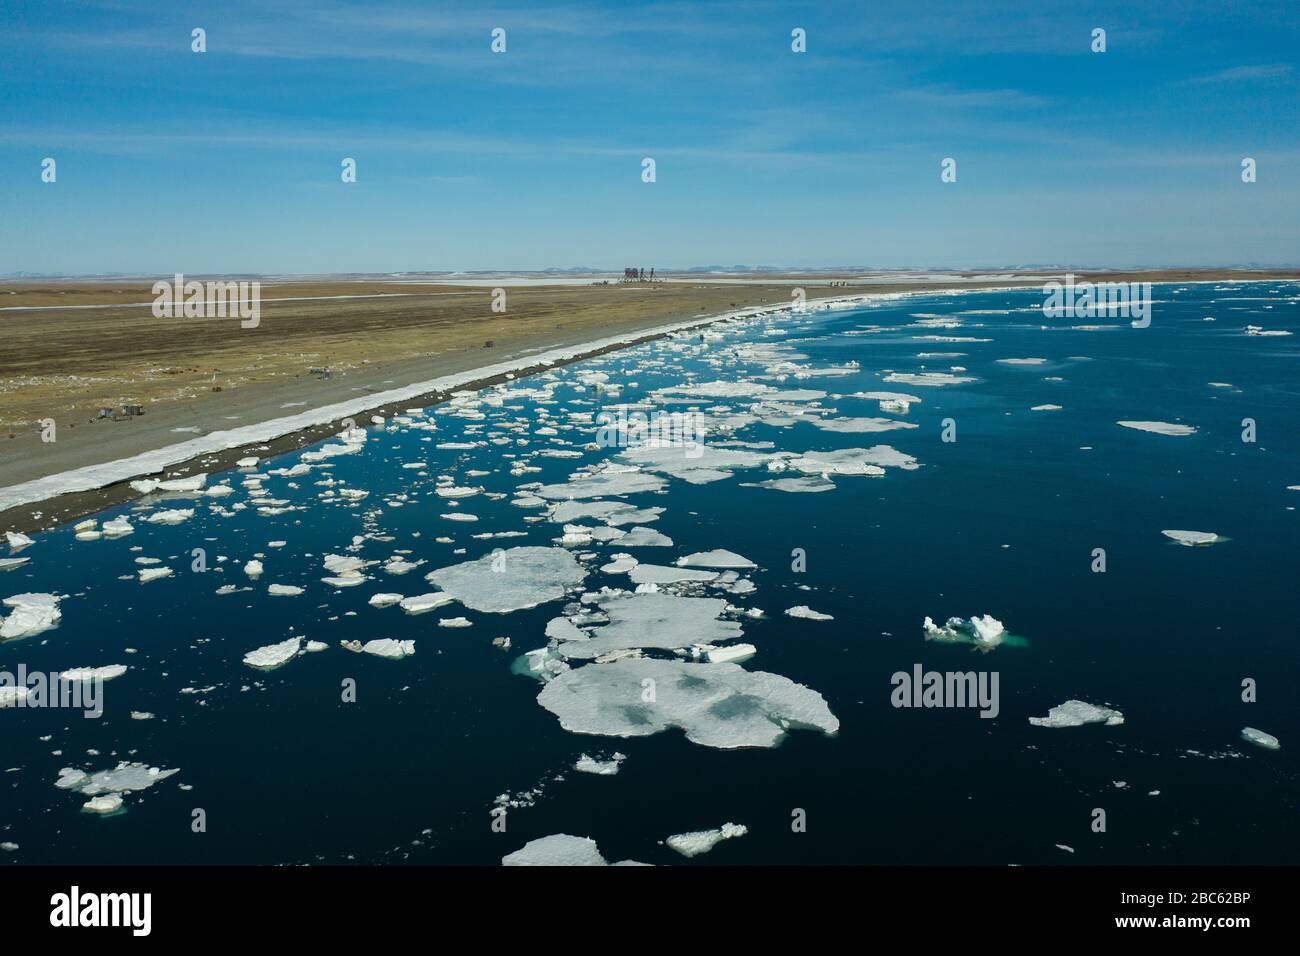 La bande côtière de la mer couverte de glace et de neige. Lieu de tournage sur la côte nord de la mer de Béring, région de Chukchi, Russie. Banque D'Images